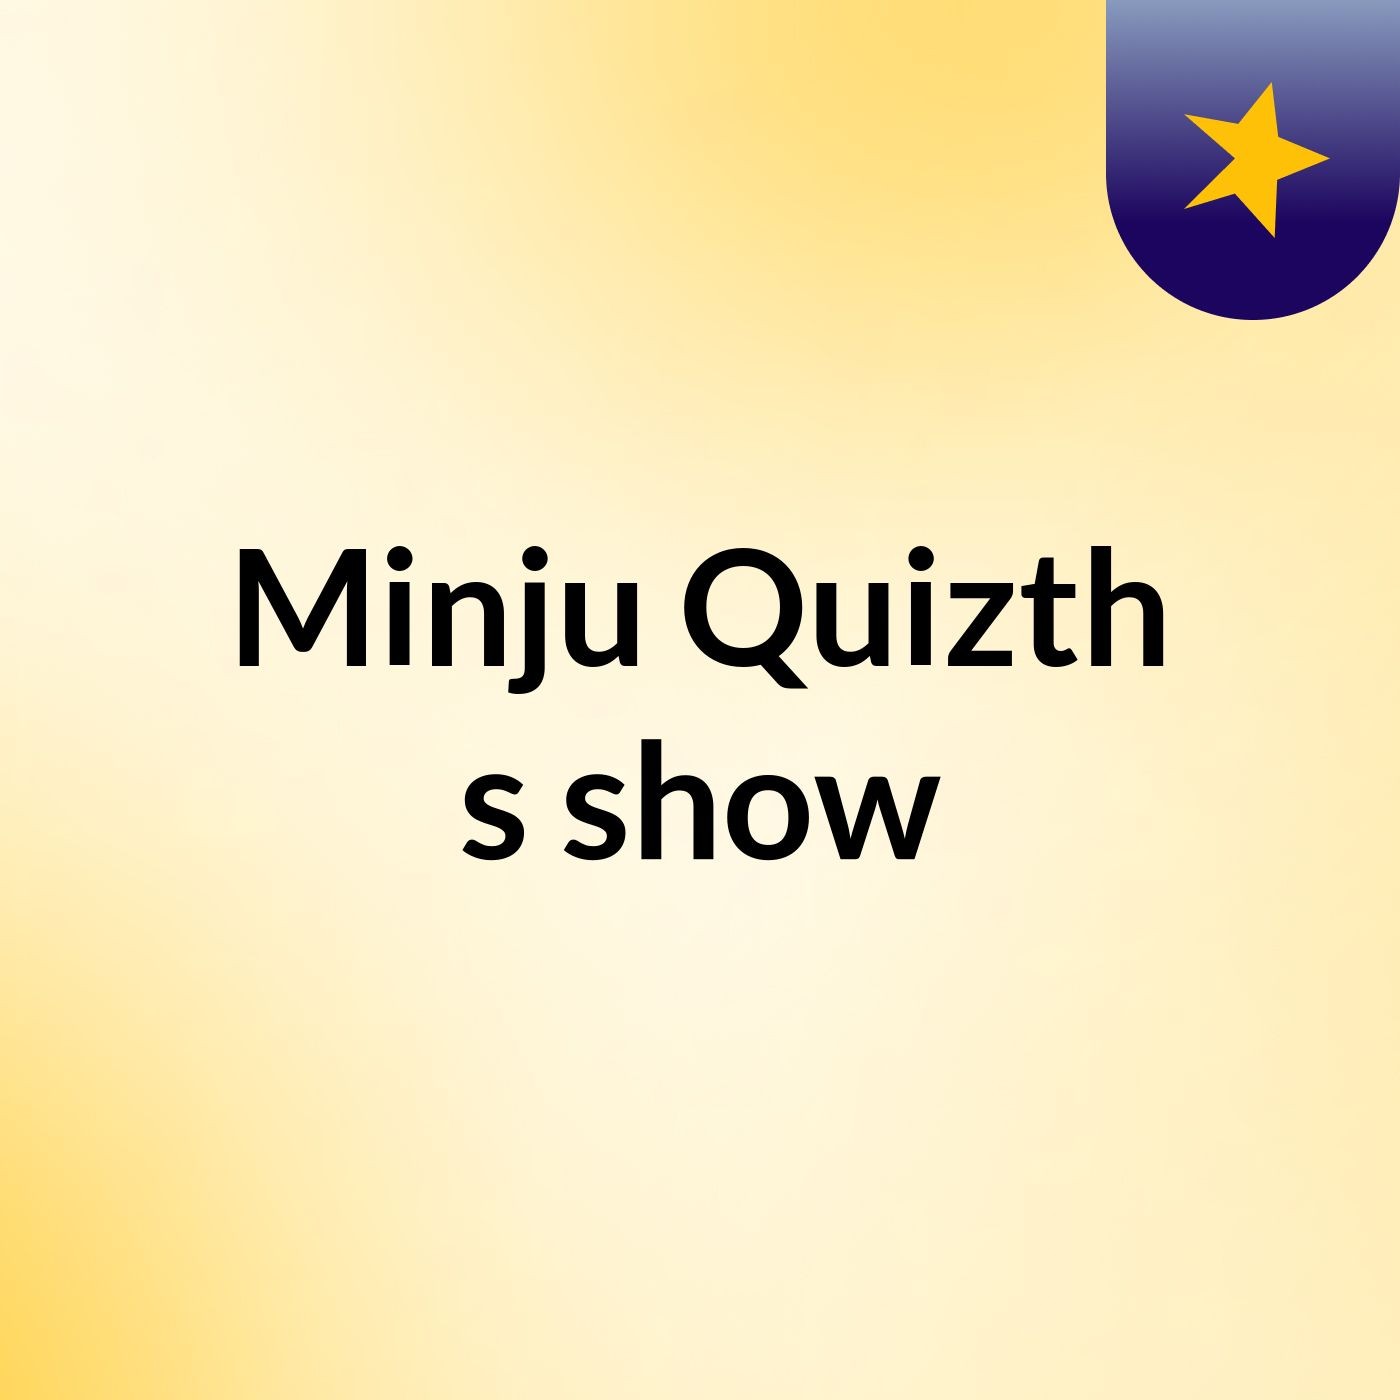 Minju Quizth's show